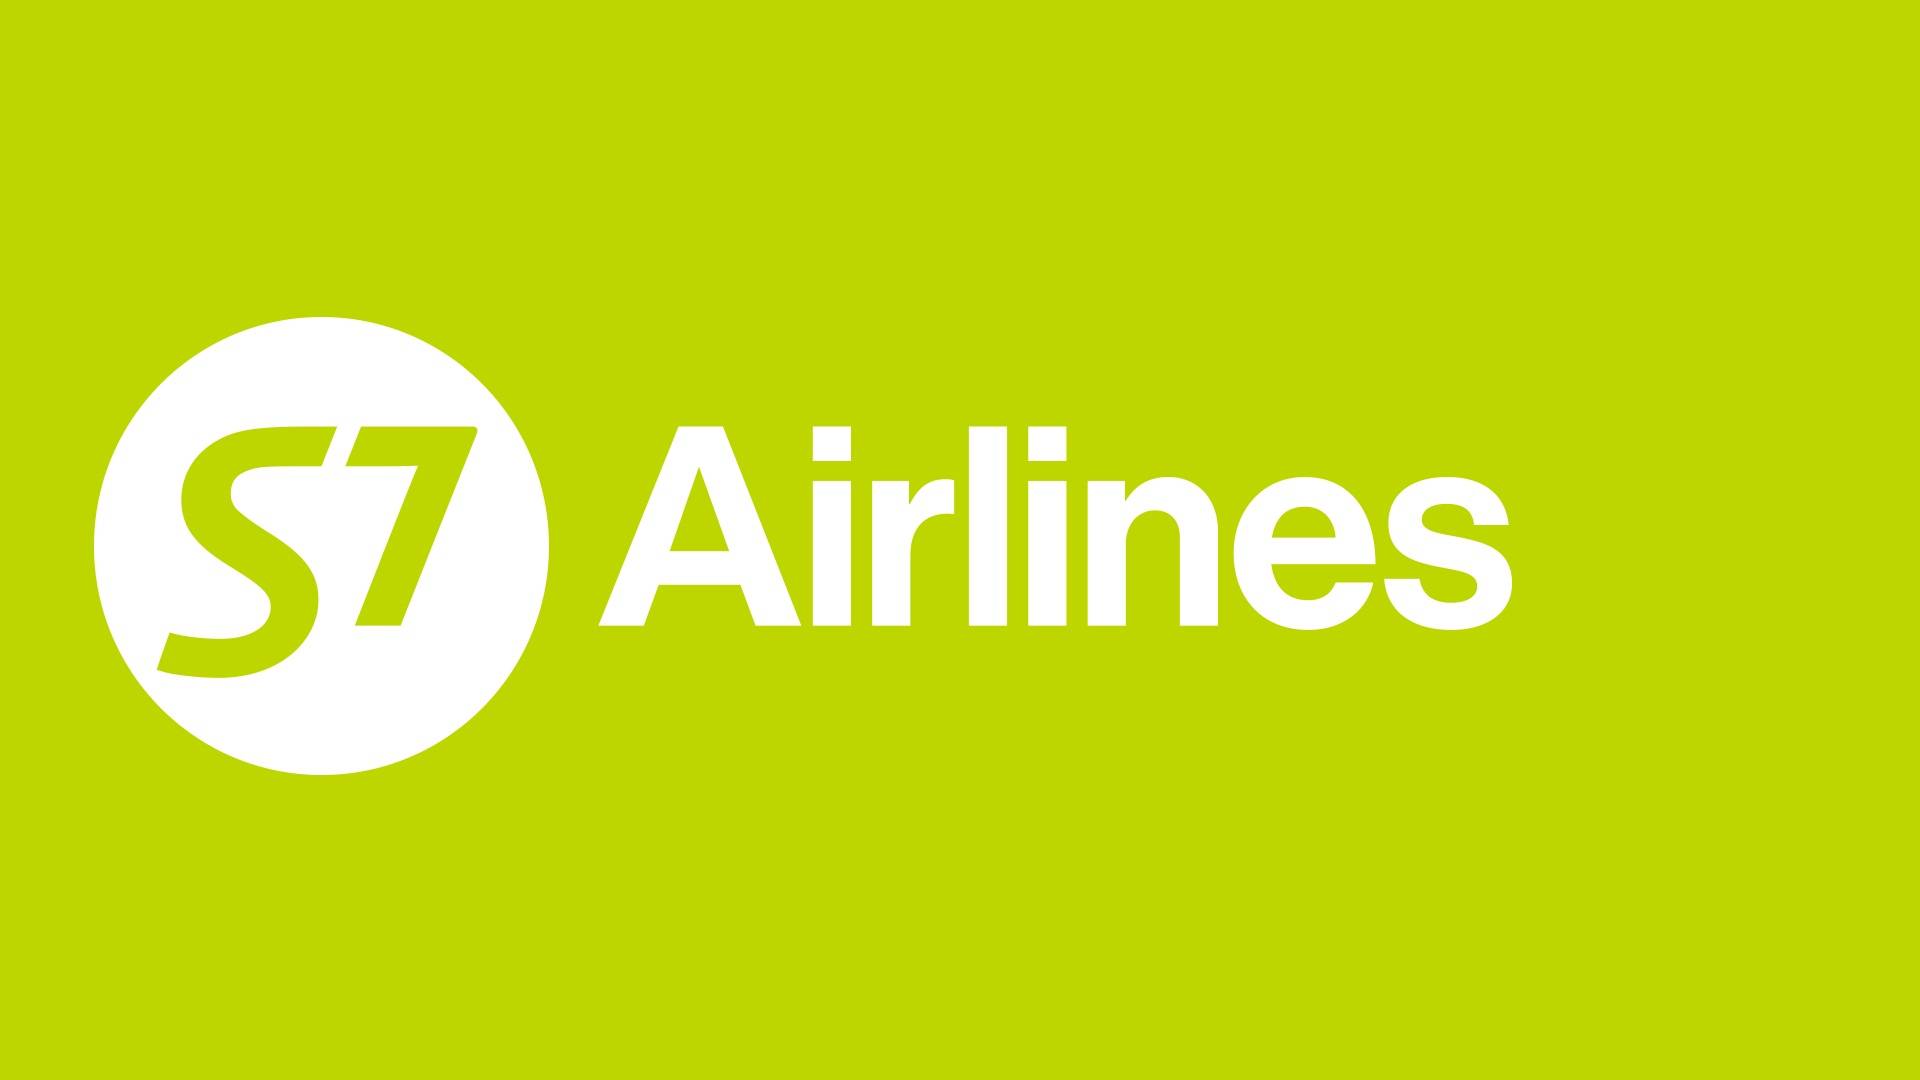 Авиакомпания s7 airlines: куда летает, какие аэропорты, парк самолетов